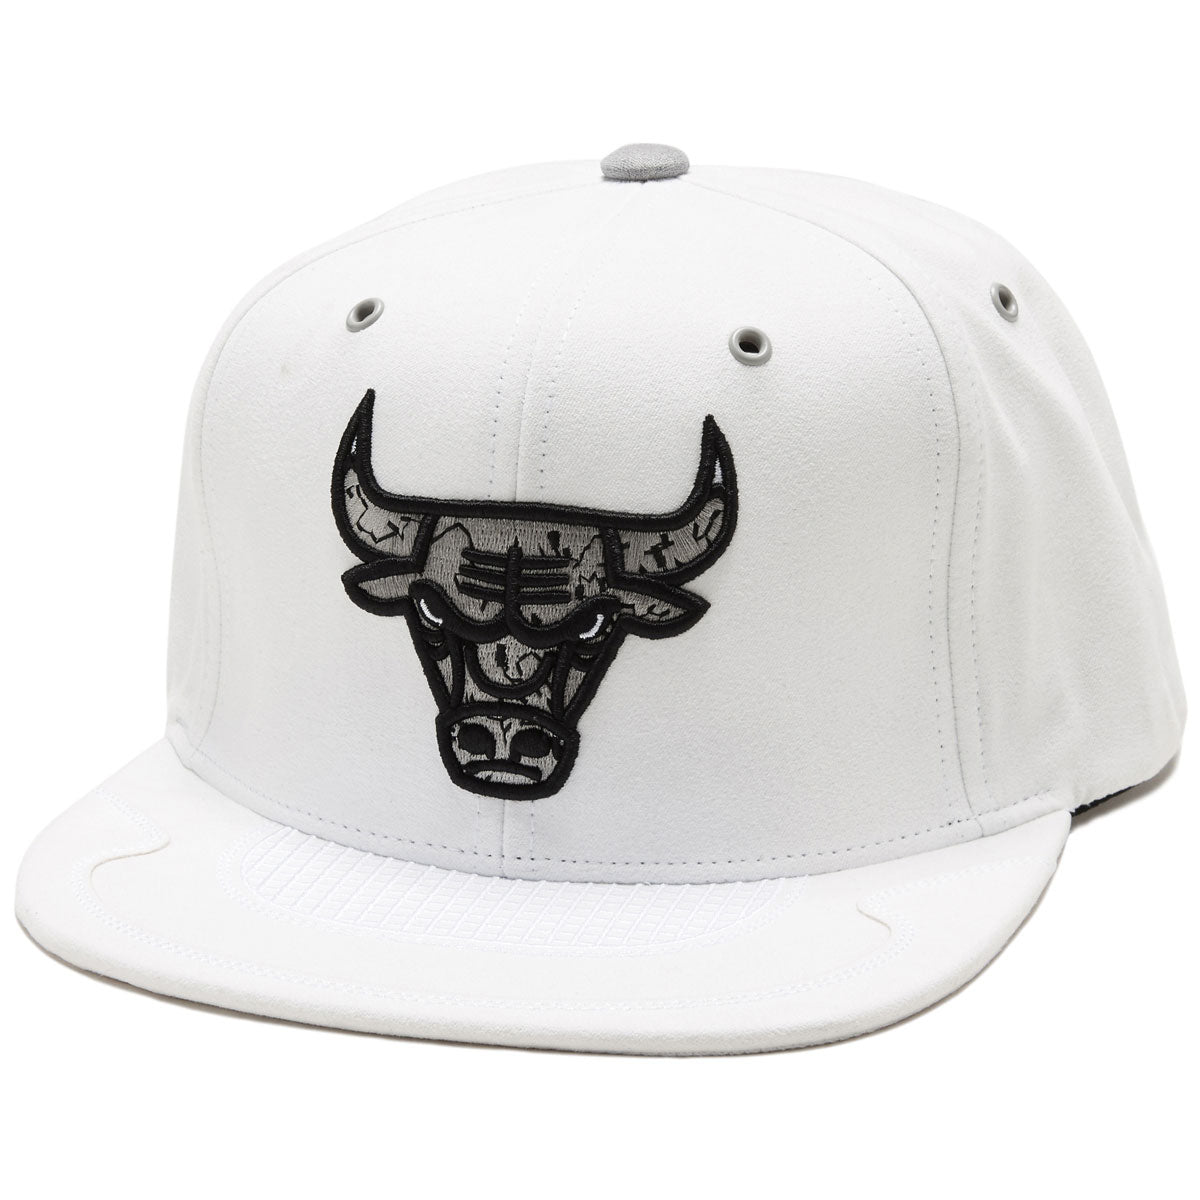 Mitchell & Ness x NBA Day 4 Snapback Bulls Hat - White image 1